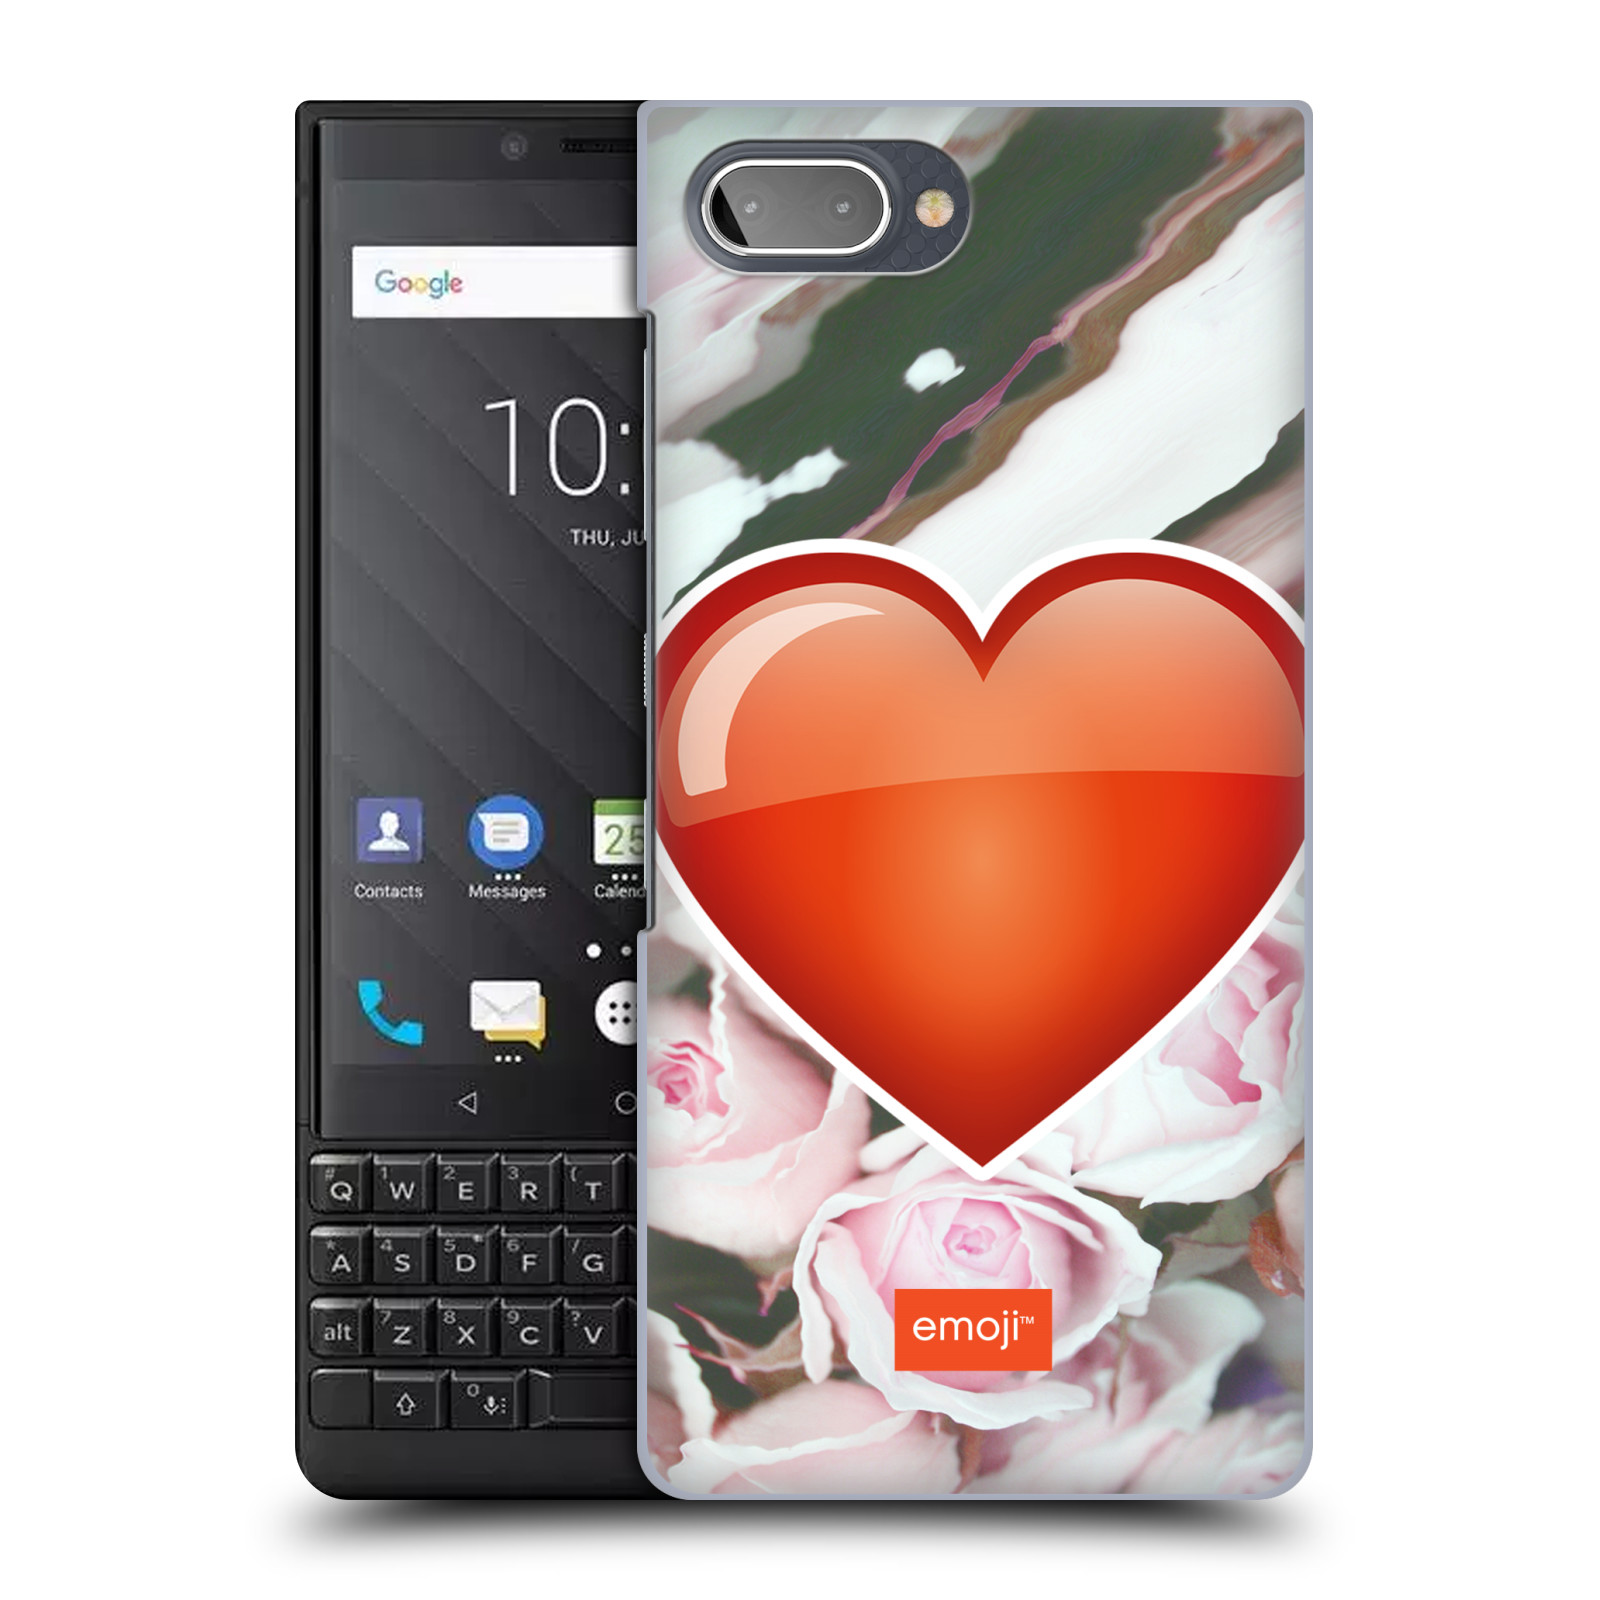 Pouzdro na mobil Blackberry KEY 2 - HEAD CASE - Emoji srdíčko